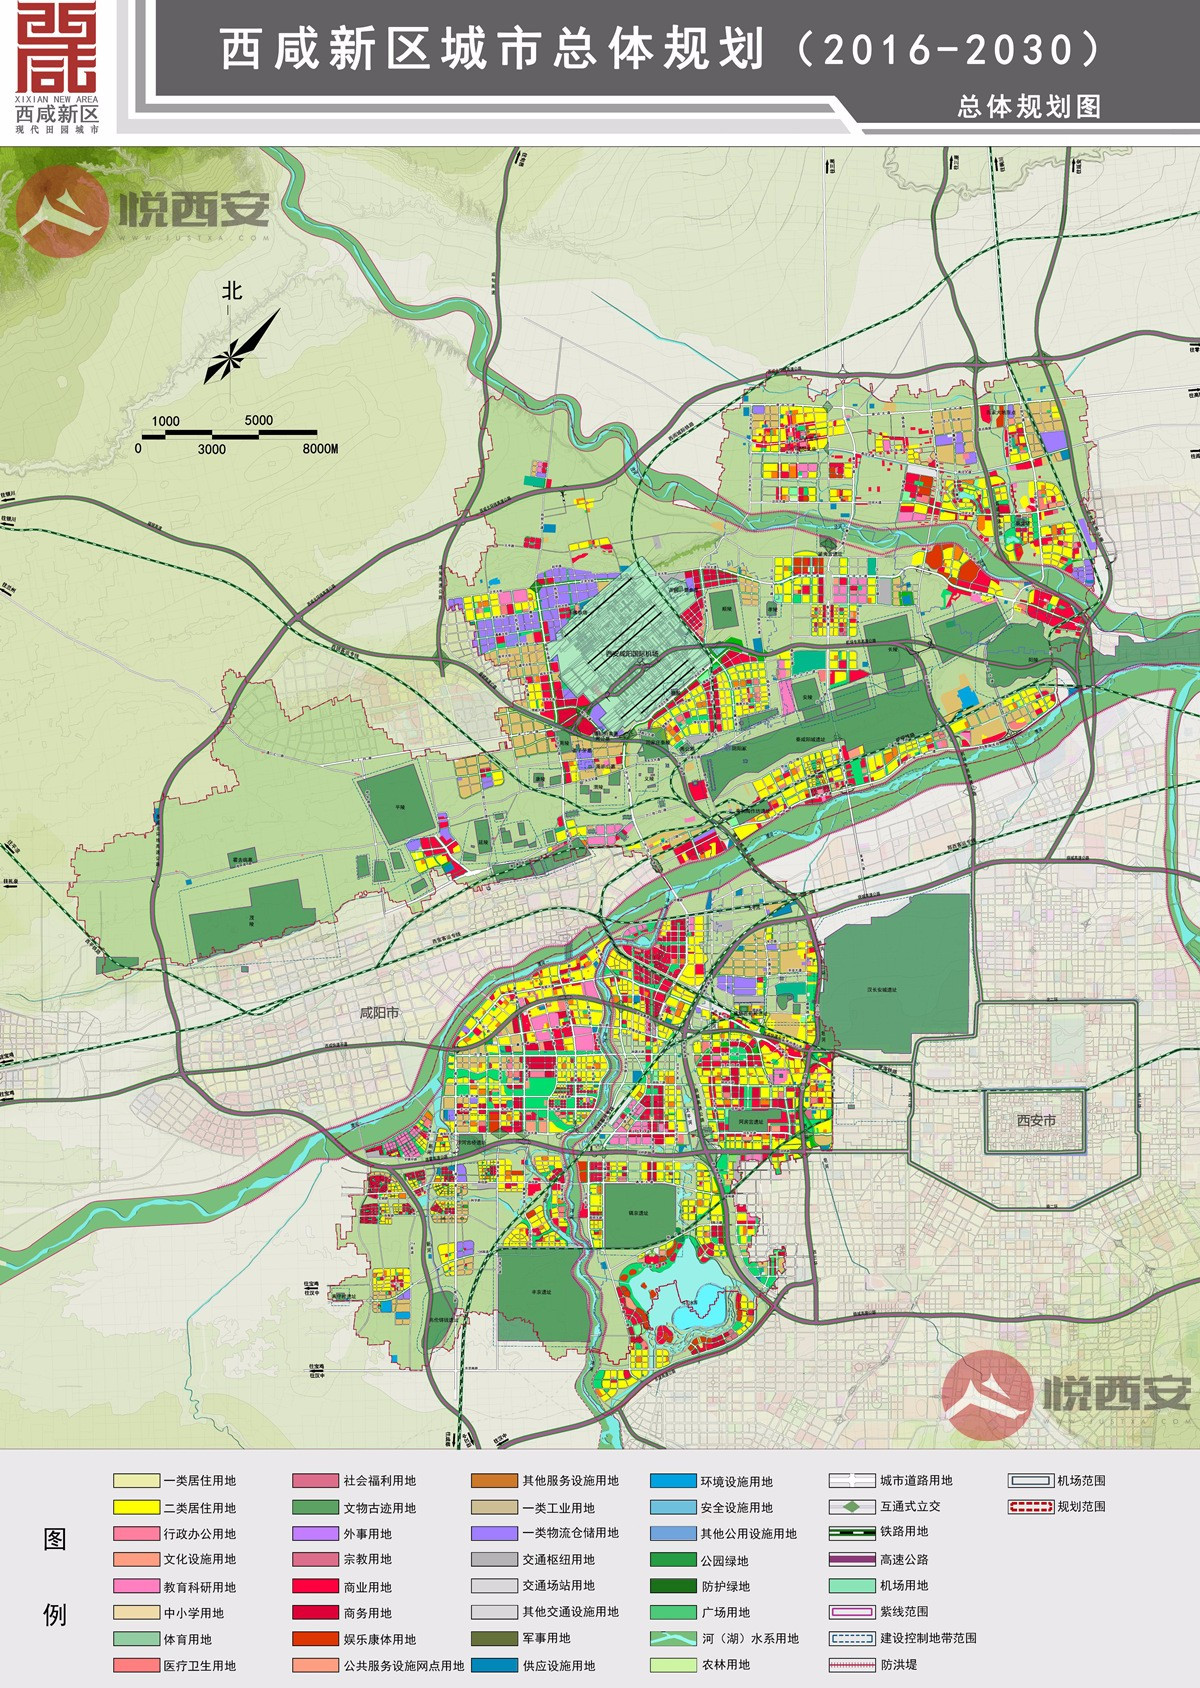 西咸新区2016-2030城市总体规划图